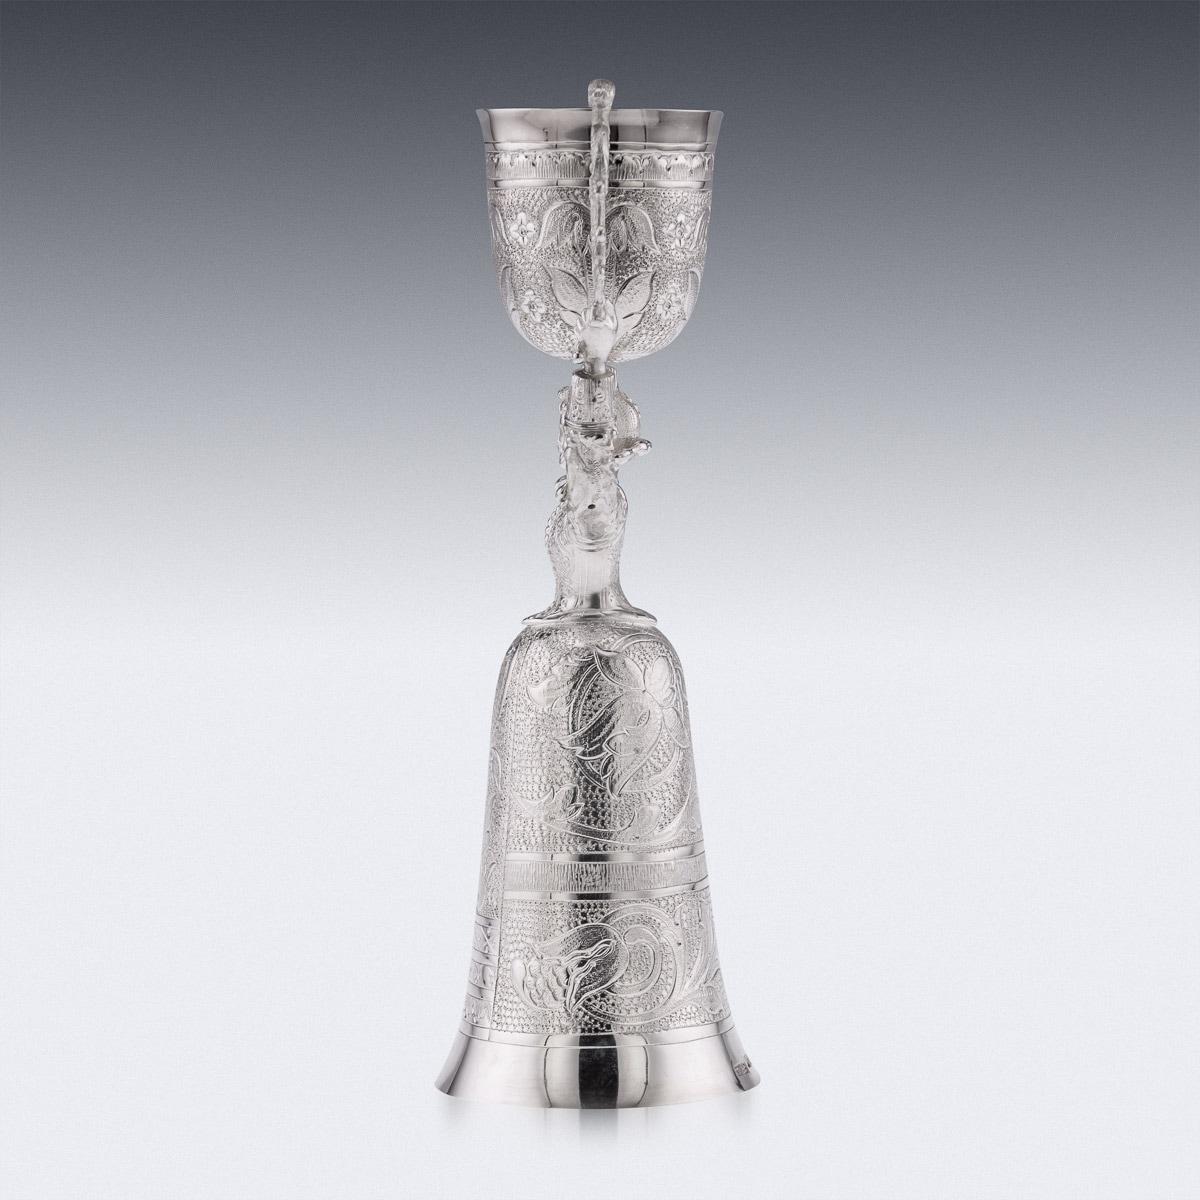 Neuheit 20. Jahrhundert massivem Silber Wette / Ehe Tasse, die Tassen Design inspiriert von den frühen 16. Jahrhundert deutschen Beispiel, modelliert als eine weibliche Figur, die über ihren Kopf eine kleine gewölbte schwenkbare Tasse und die